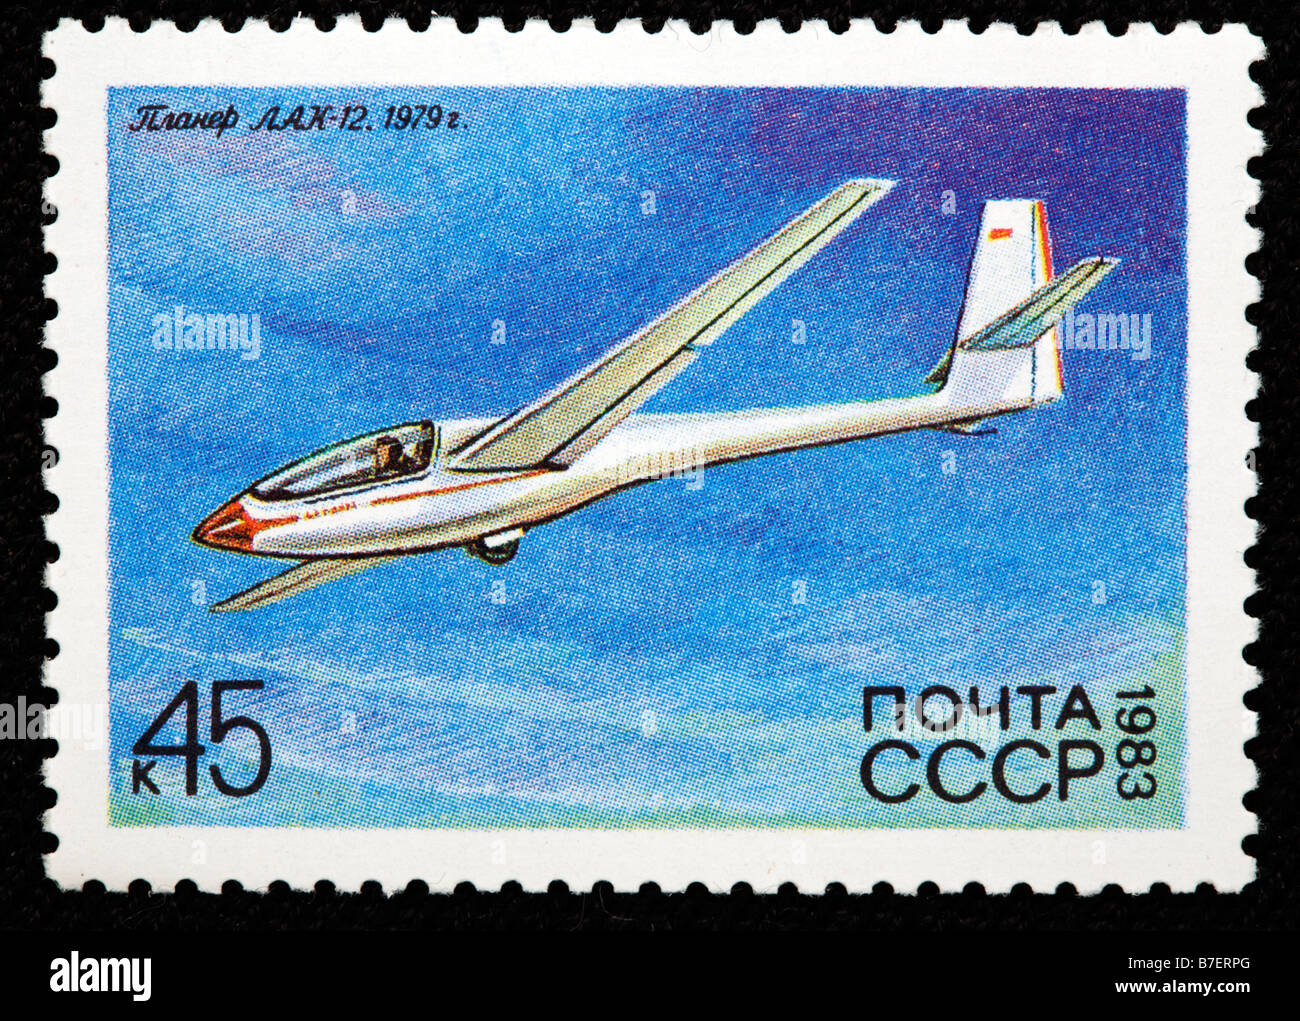 Geschichte der Luftfahrt, russische Segelflugzeug 'LAK 12' (1979), Briefmarke, UdSSR, Russland, 1983 Stockfoto